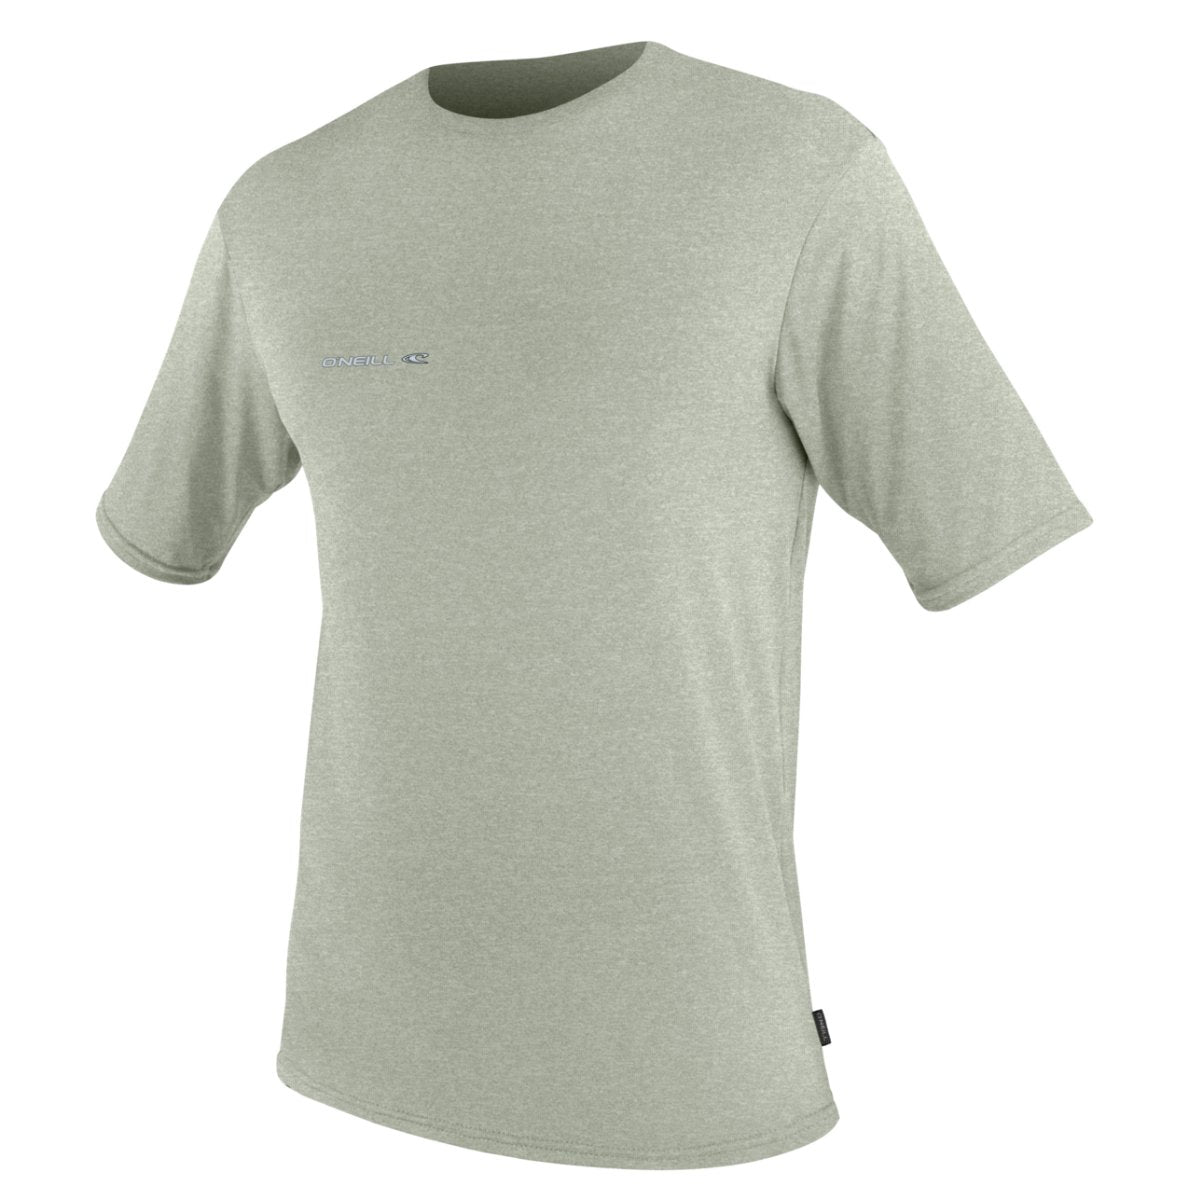 O'Neill Hybrid S/S Sun Shirt in Seagrass - BoardCo